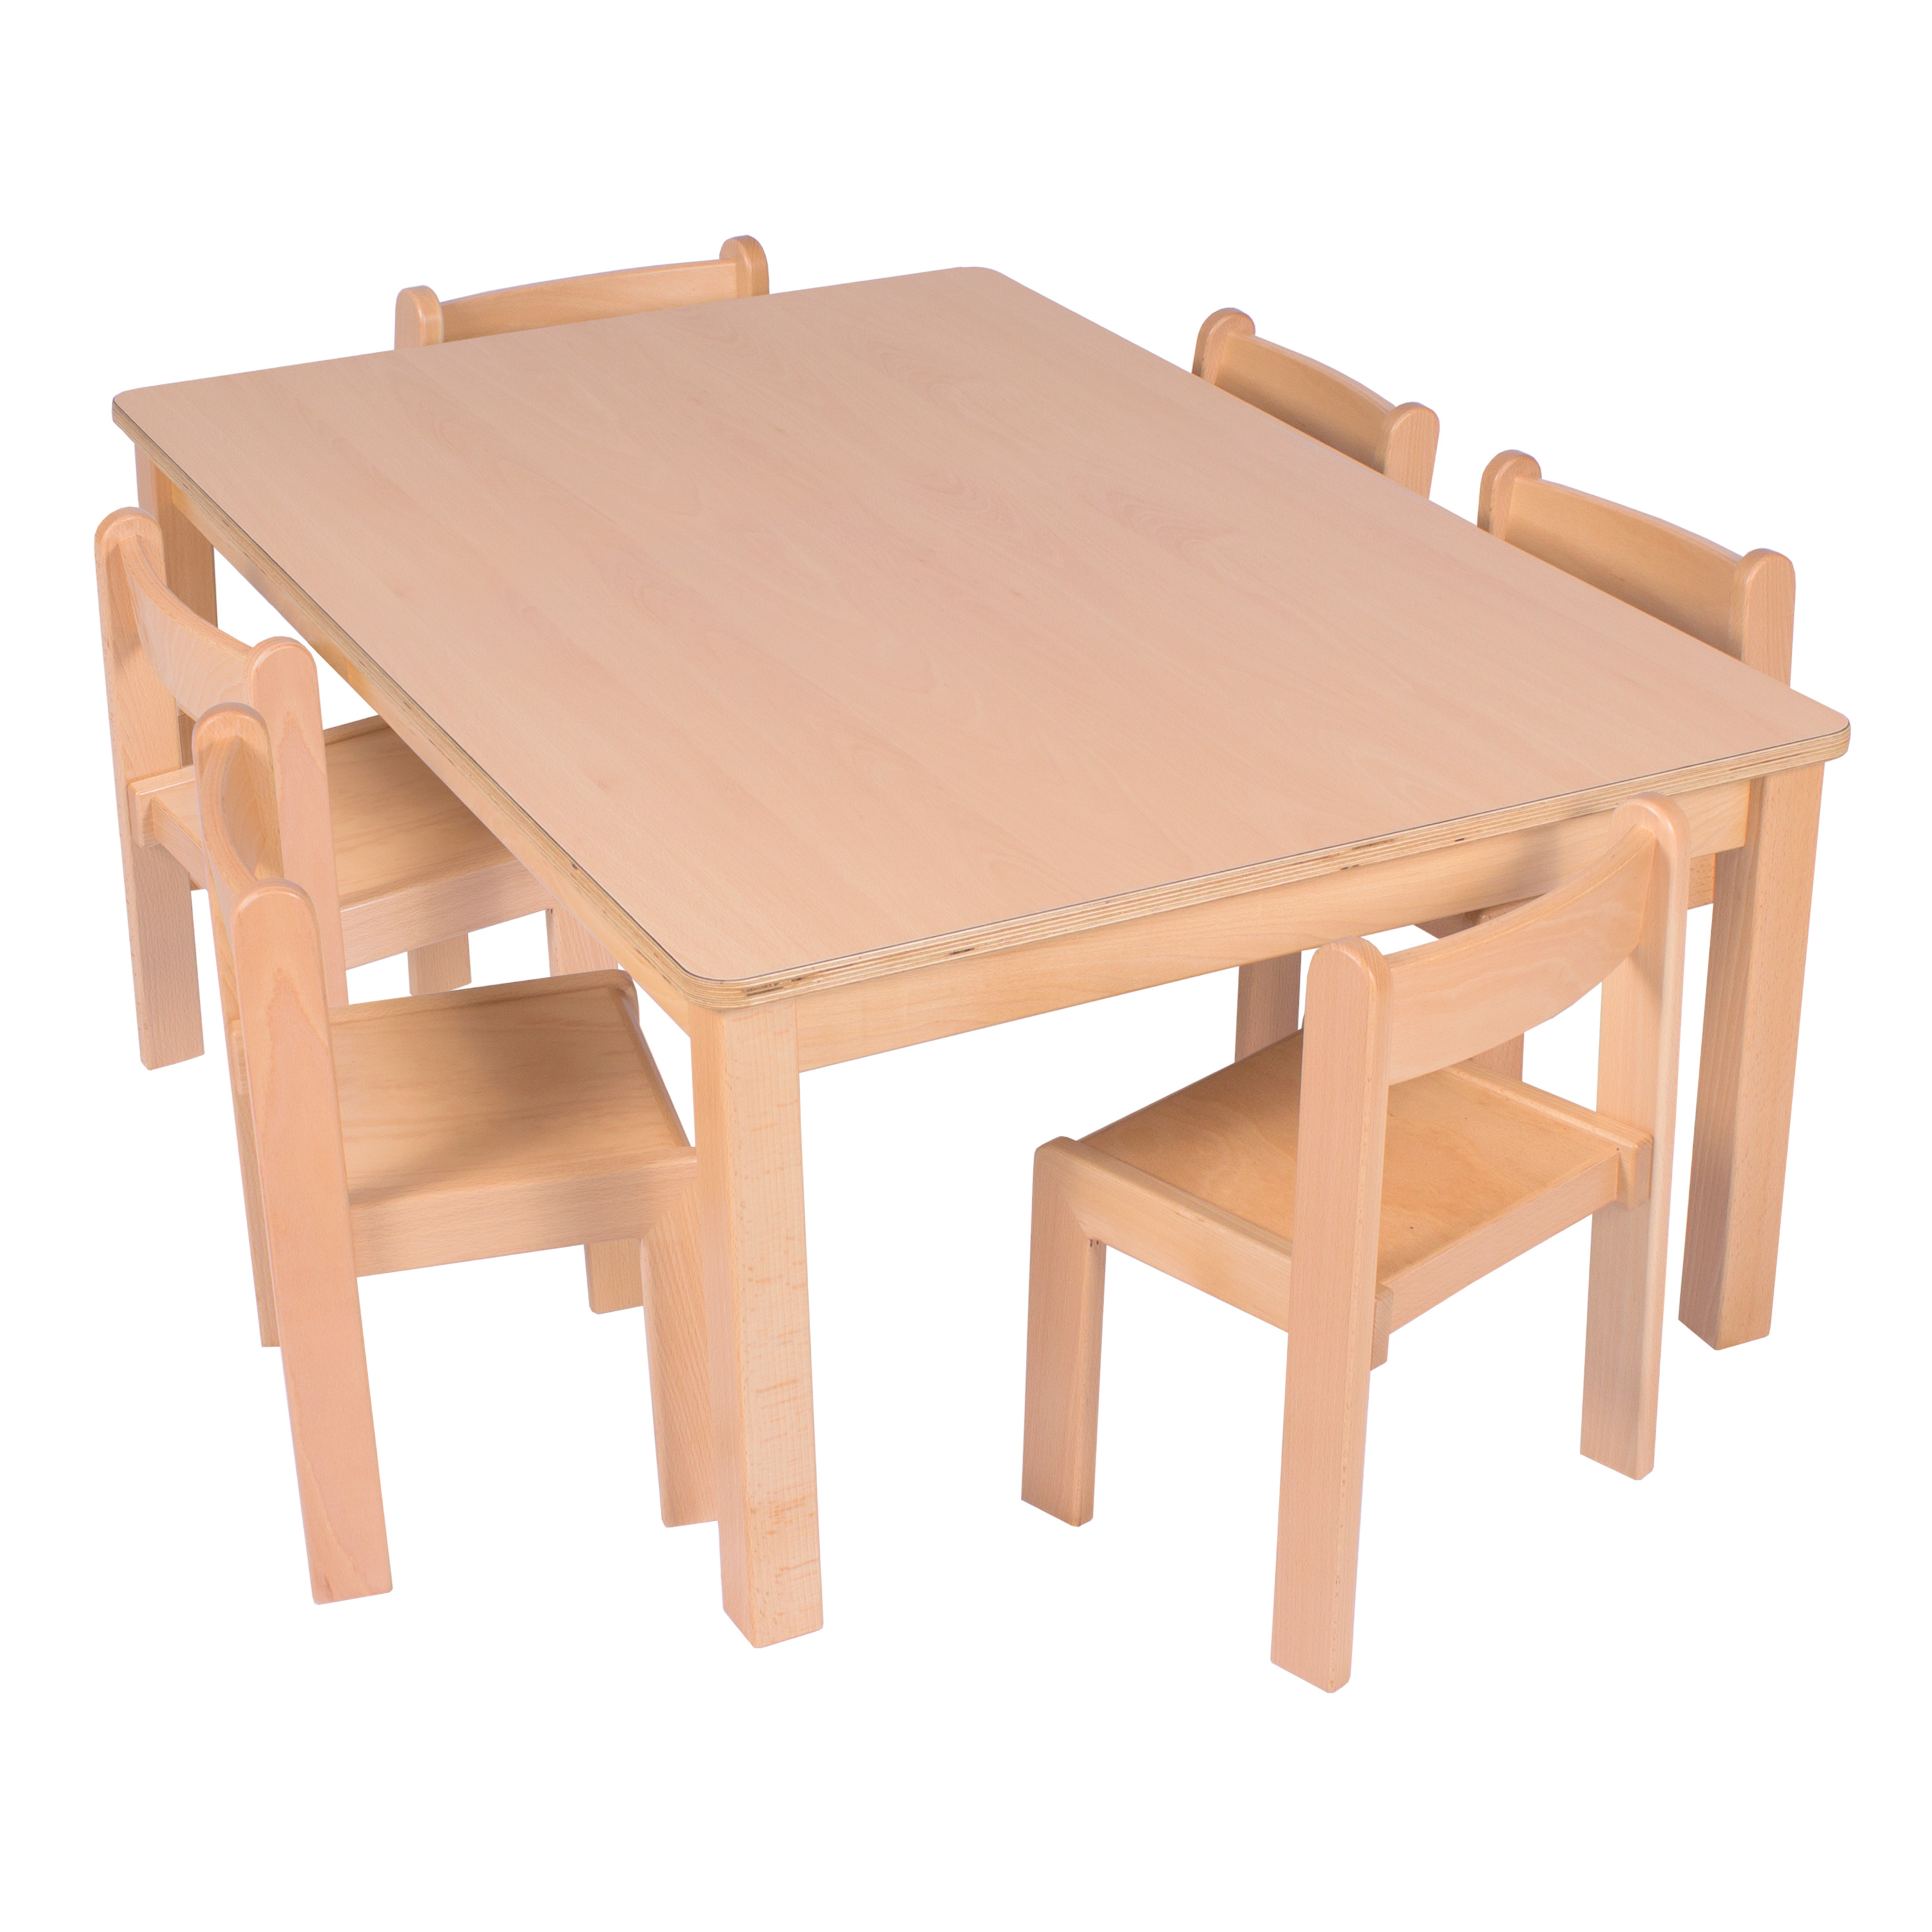 U3-Rechteck-Tisch 120 x 80 cm, Ecken gerundet, versch. Höhen